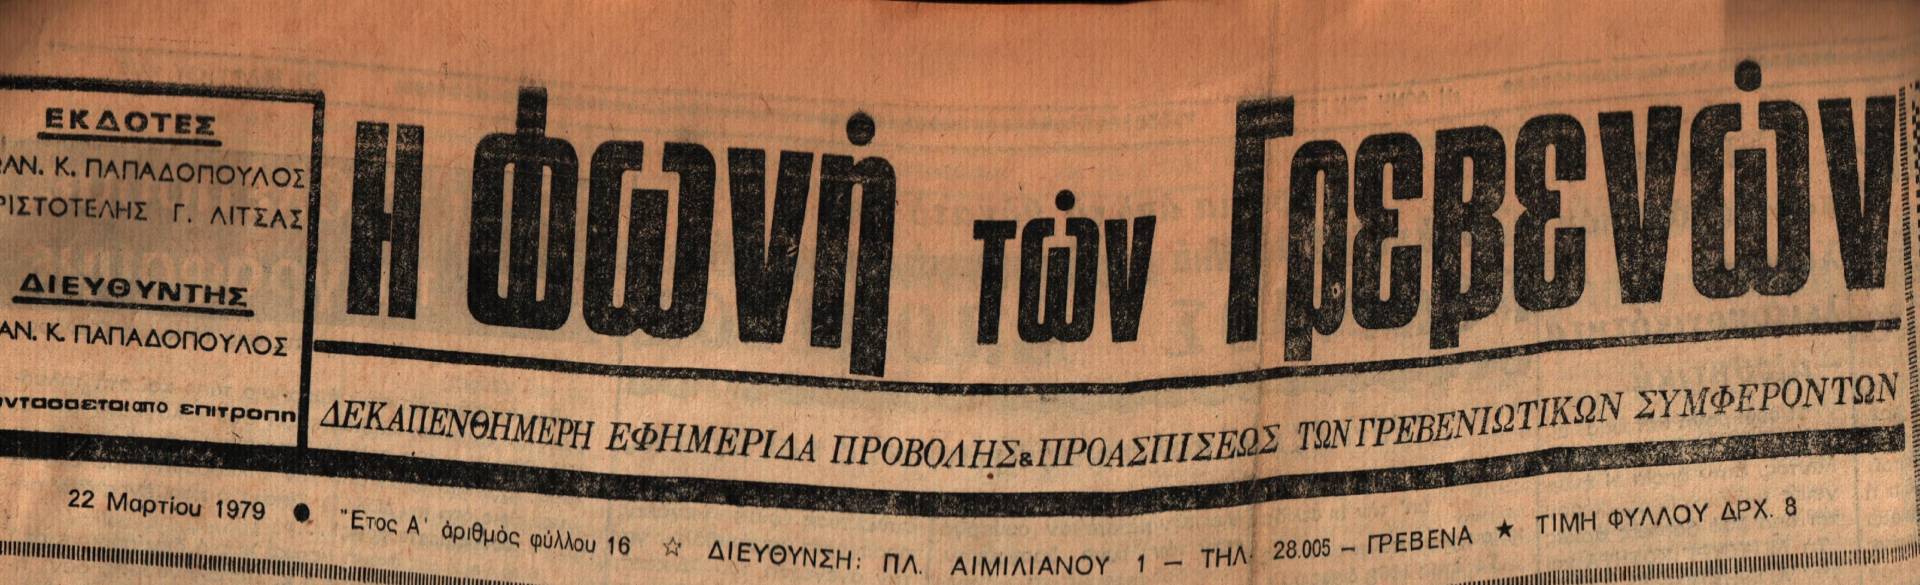 22 Μαρτίου 1979: Η ιστορία των Γρεβενών μέσα από τον Τοπικό Τύπο.Σήμερα:Ιδρύεται Σύλλογος Γρεβενιωτών Βεροίας